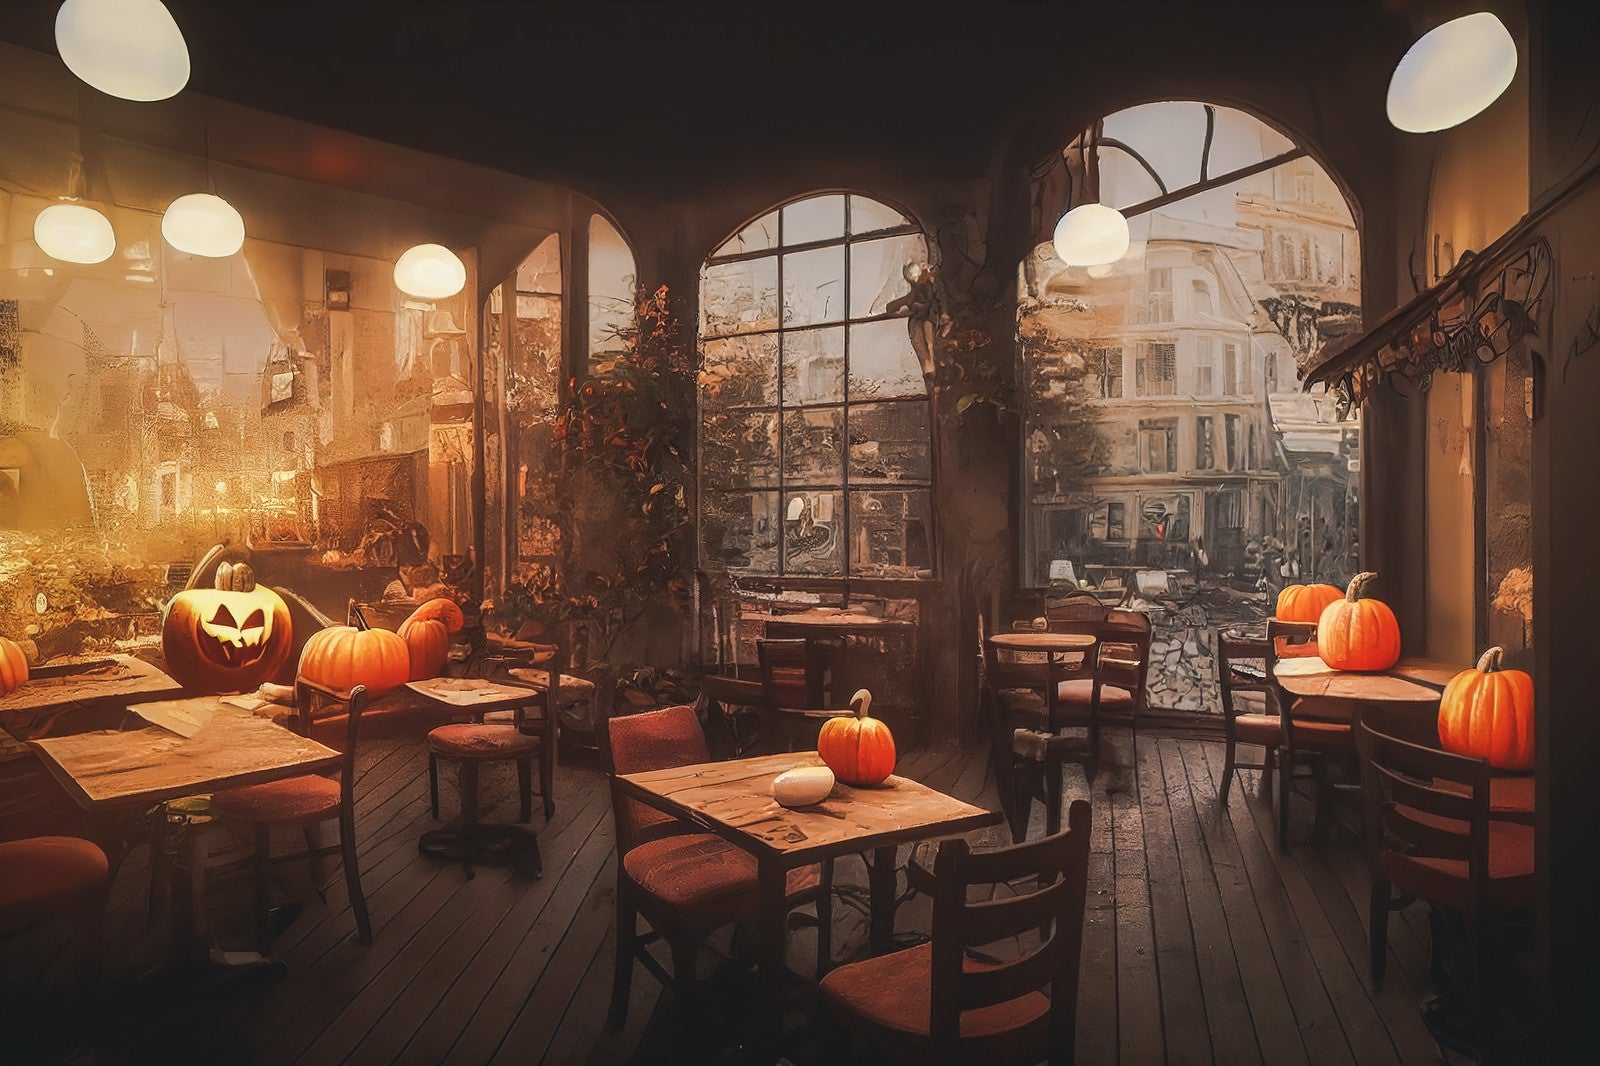 「ジャックランタンと喫茶店」の写真